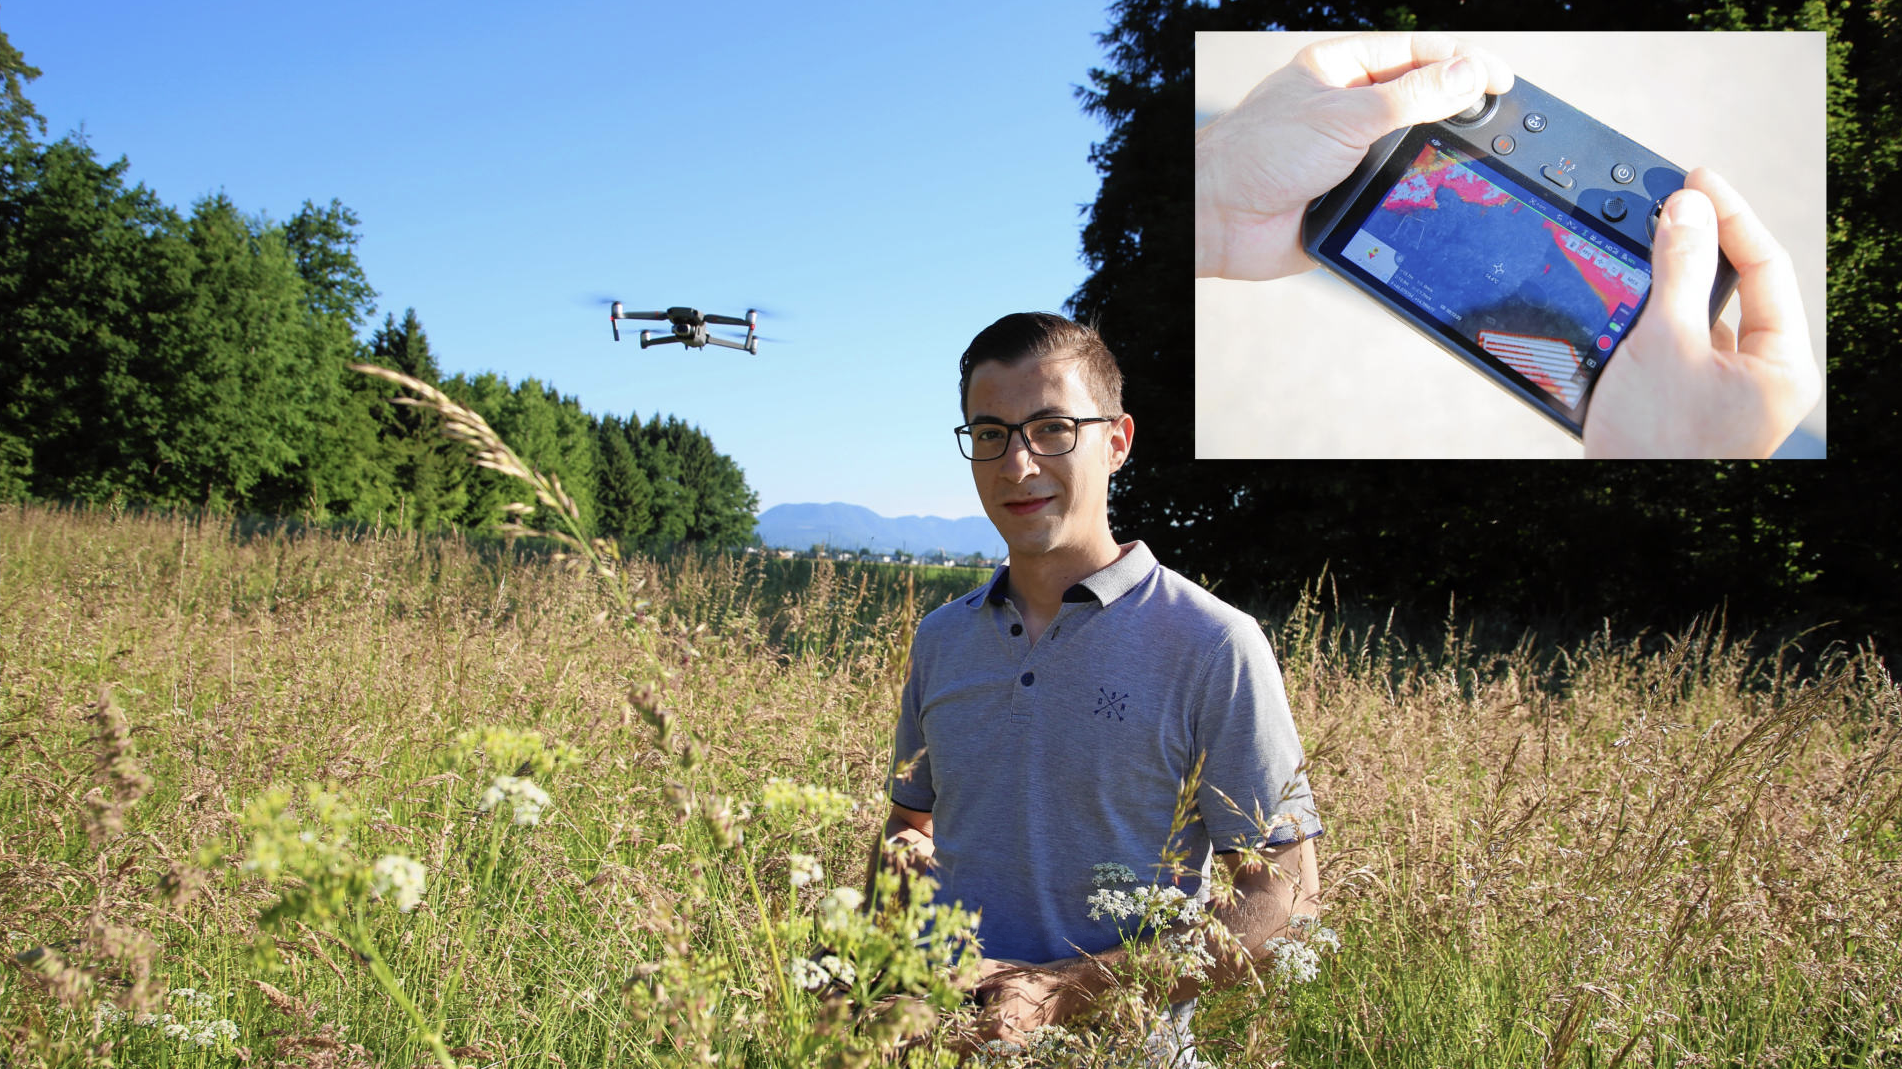 Benjamin Jöres spürt mit seiner Drohne Rehkitze auf, die sich im hohen Gras verstecken. (Bild: Evelyn HronekKamerawerk)